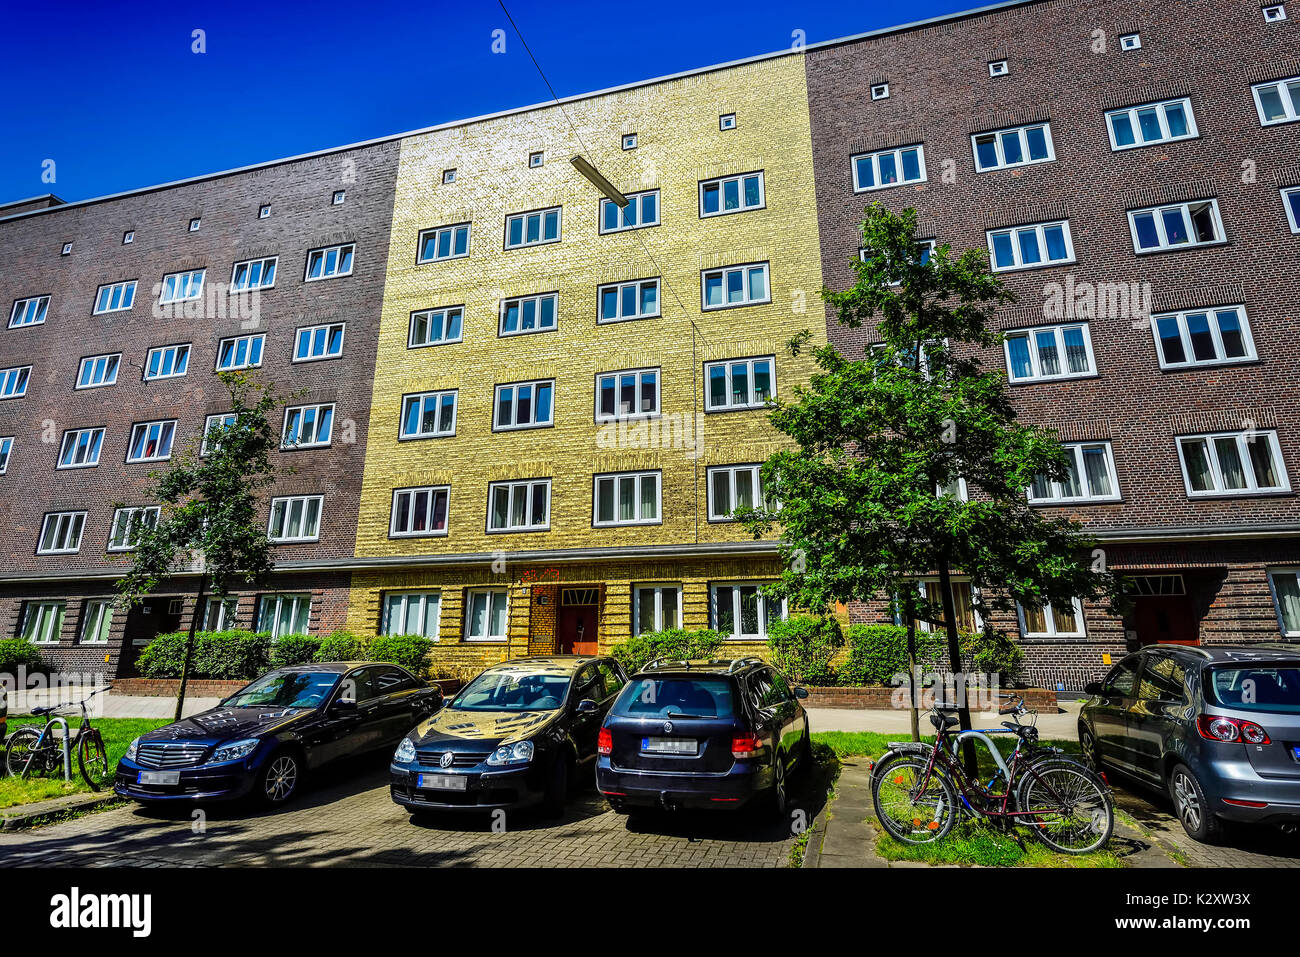 Le golden house avec façade doré sur la Veddel à Hambourg, oeuvre d'art de l'artiste Boran Burchhardt Goldhaus, Das mit vergoldeter auf der la façade Banque D'Images